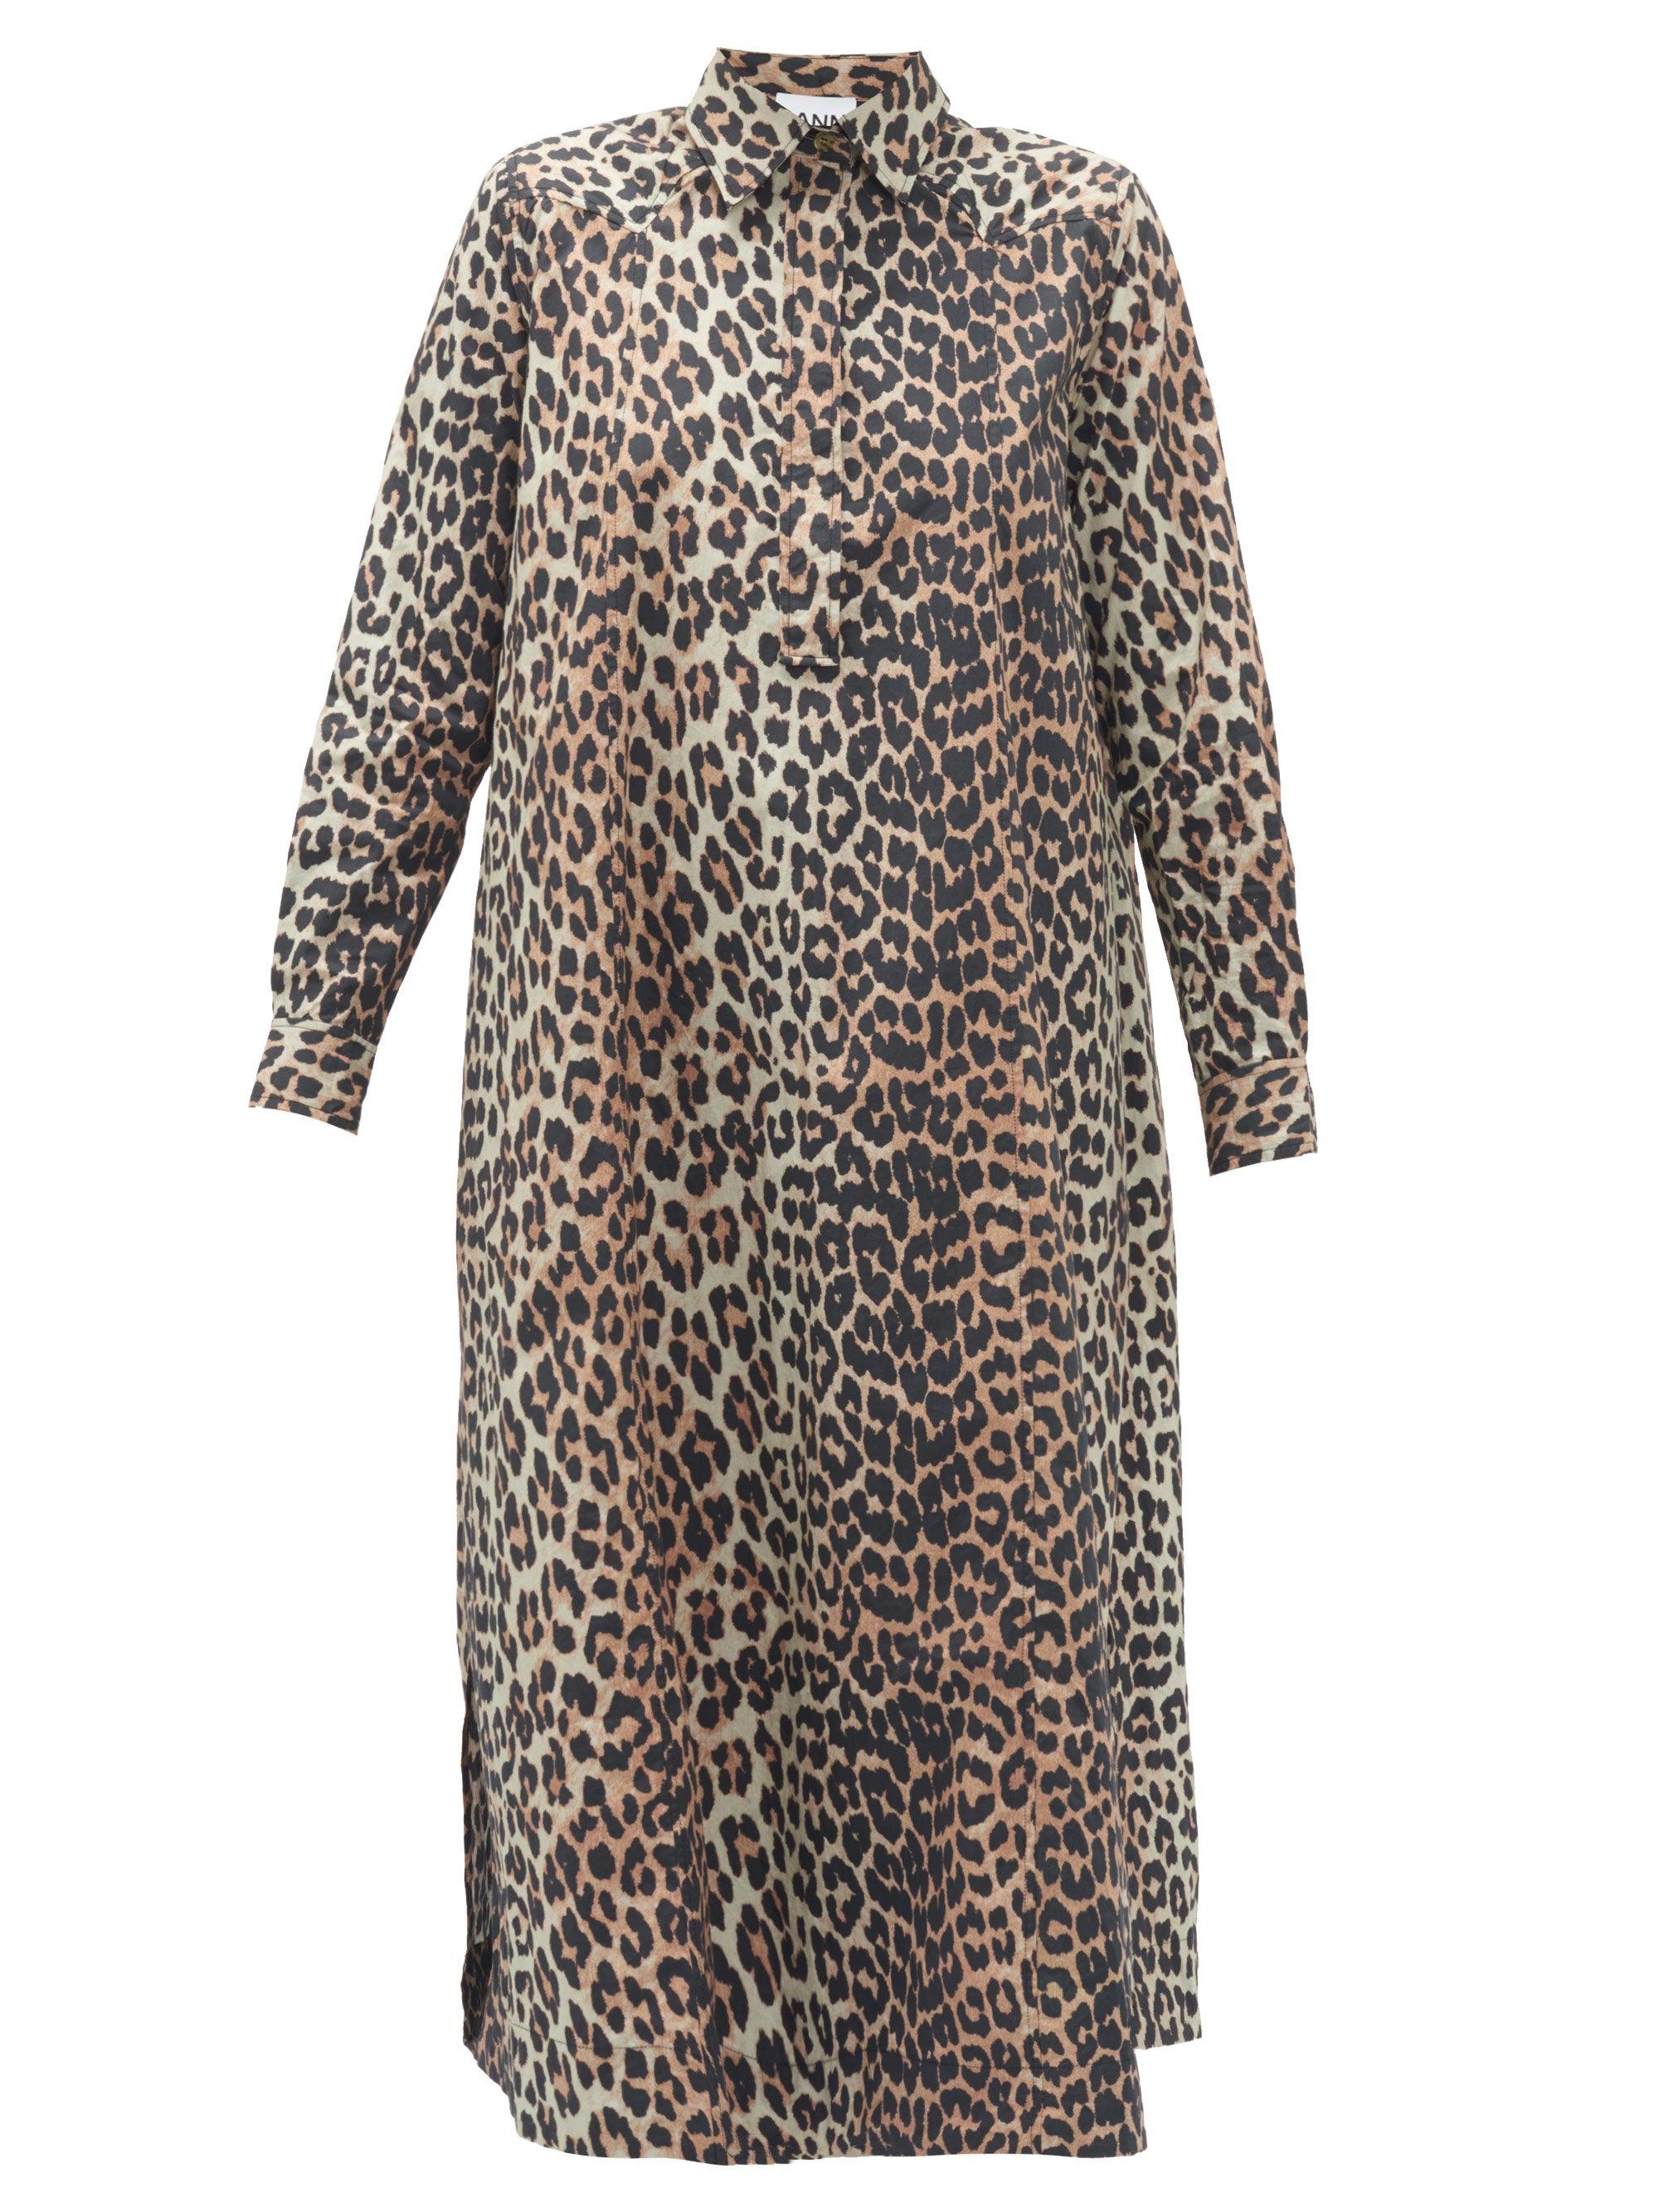 Ganni Leopard-print Cotton-poplin Shirt Dress | Lyst